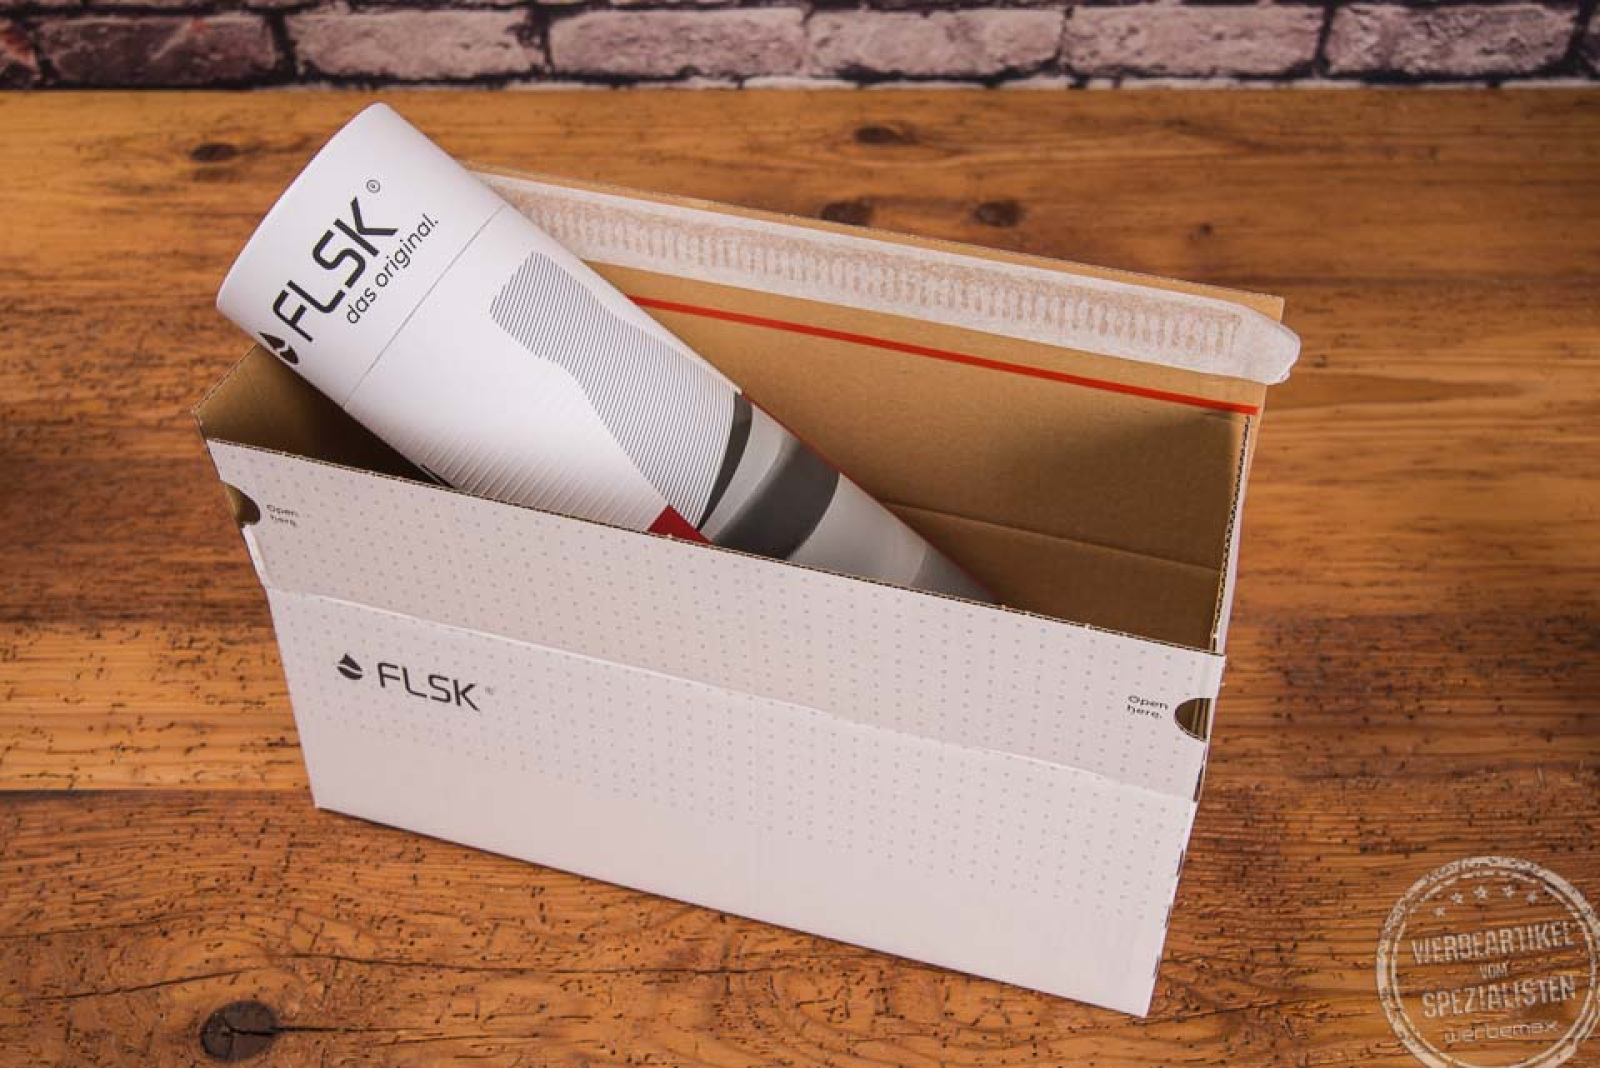 FLSK Flasche im Karton mit Versandkarton